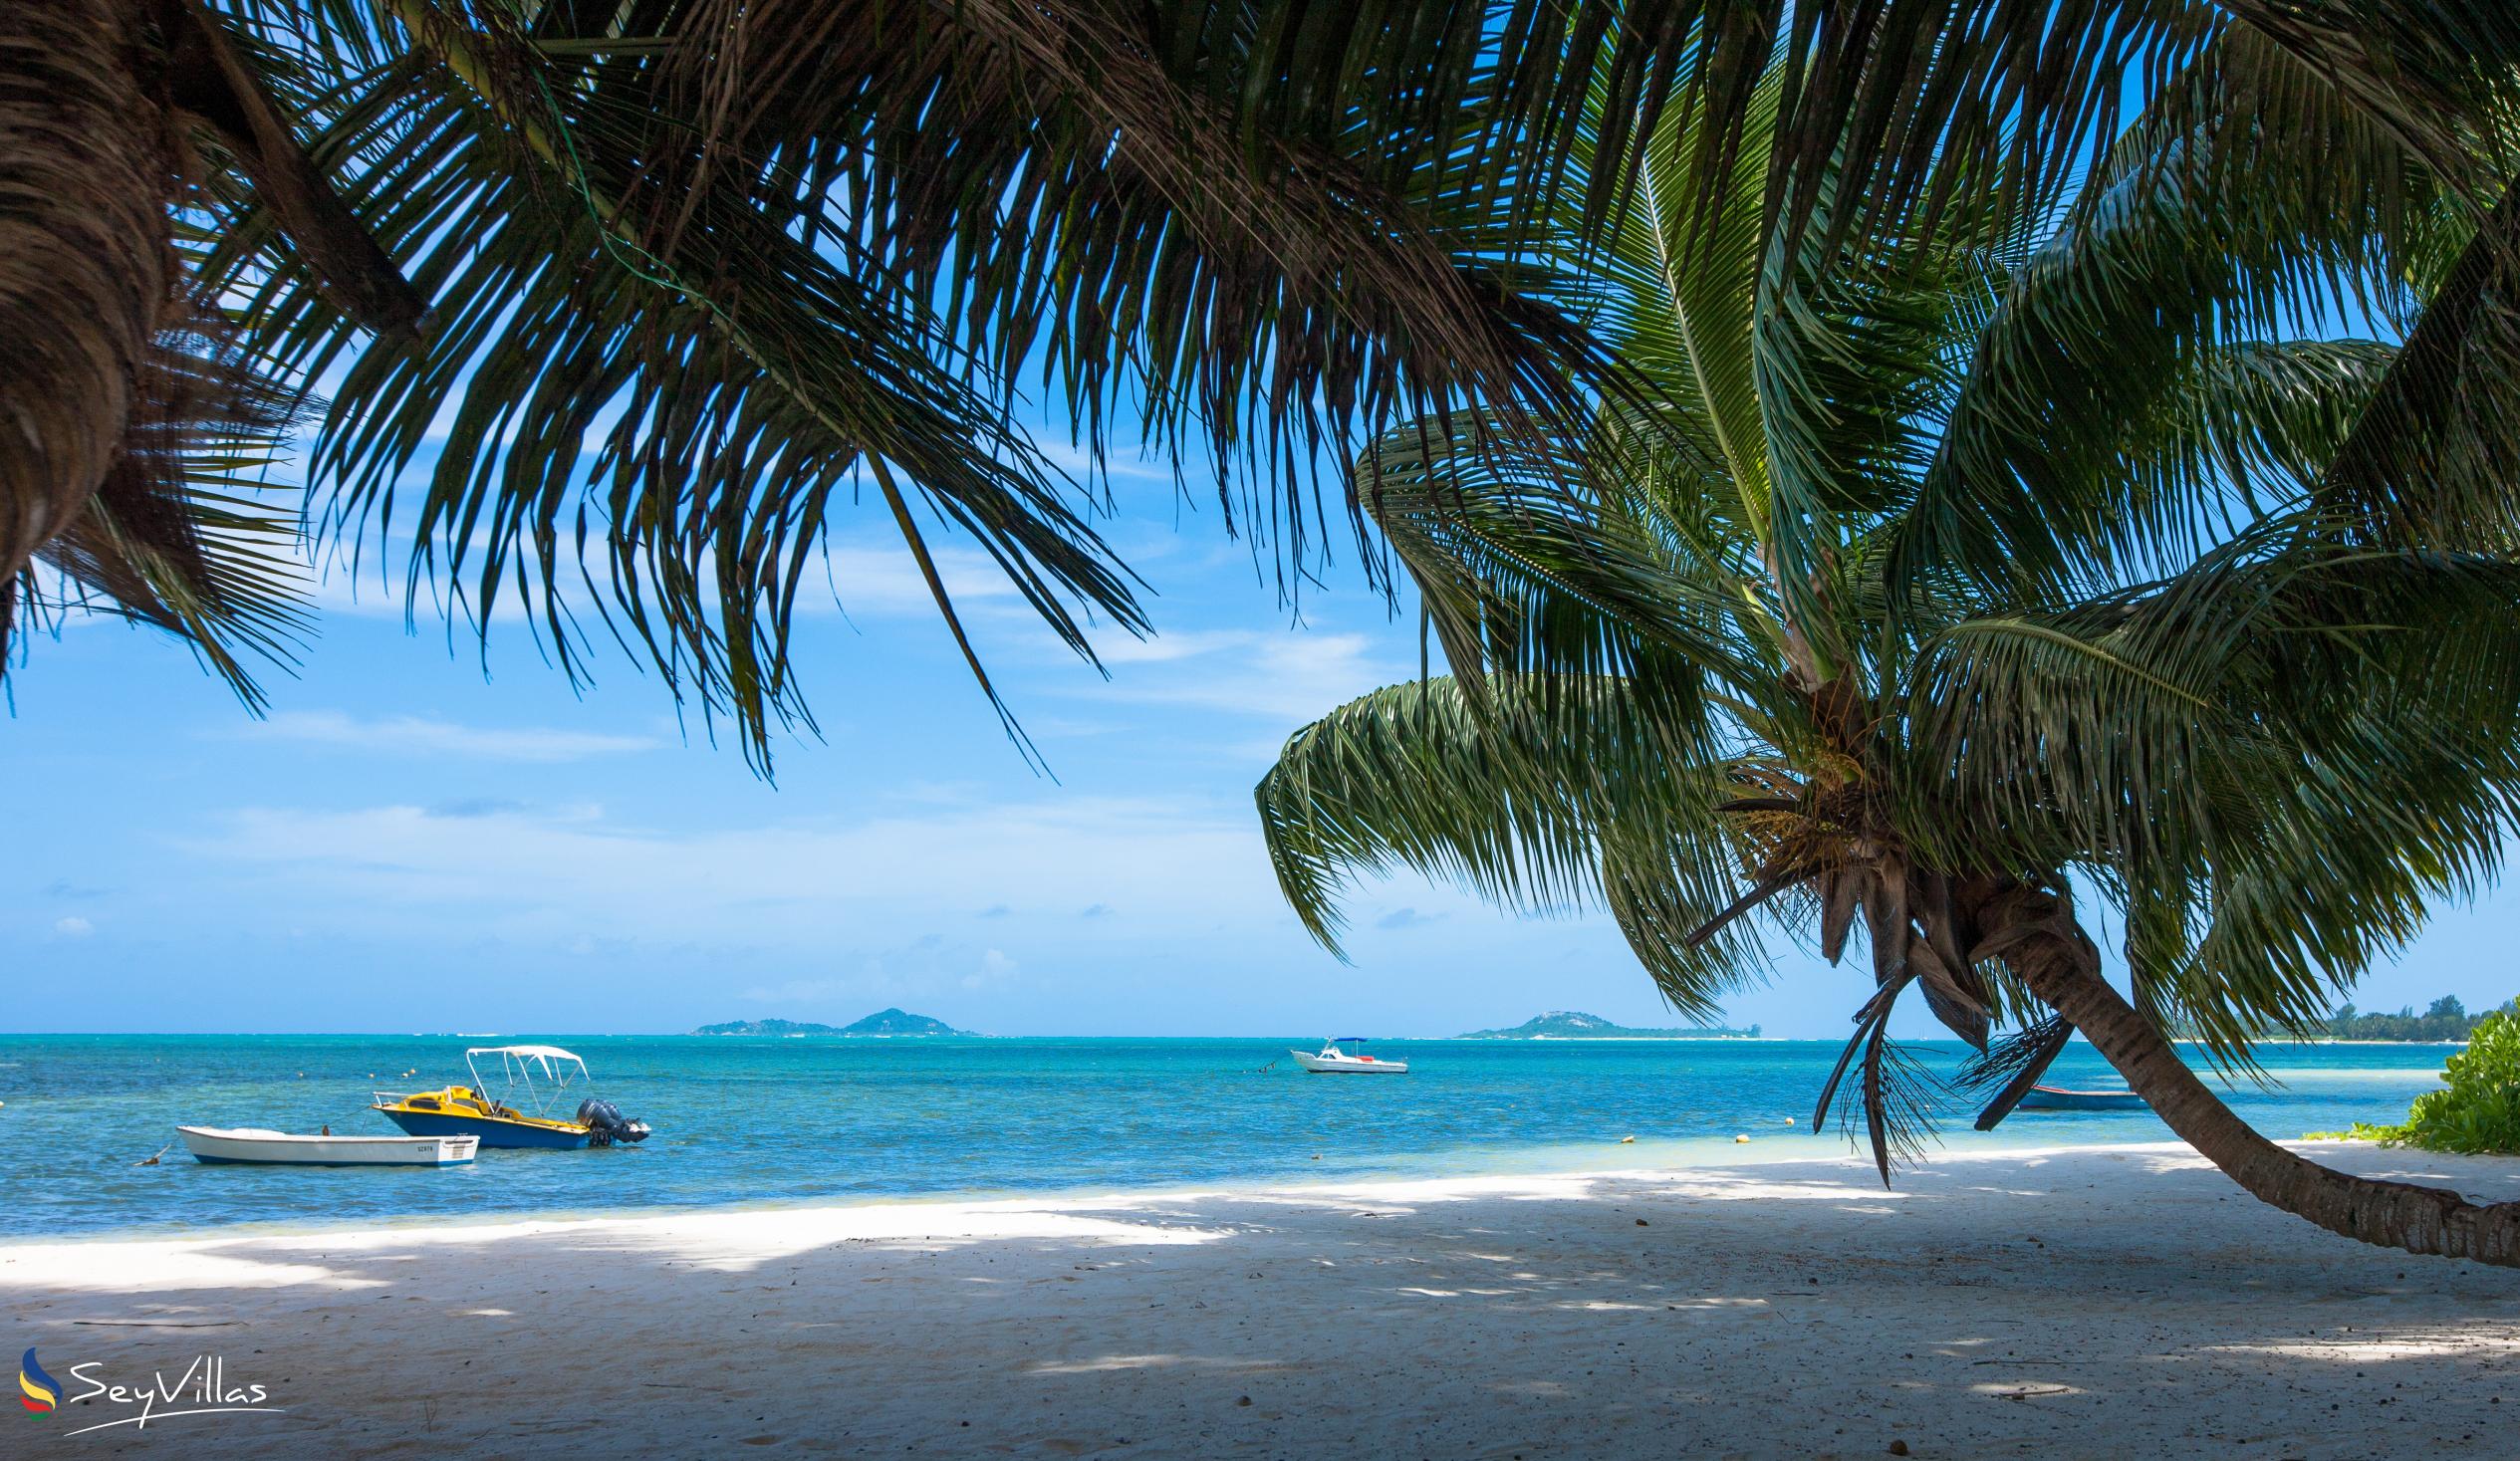 Foto 72: Le Relax Beach Resort - Strände - Praslin (Seychellen)